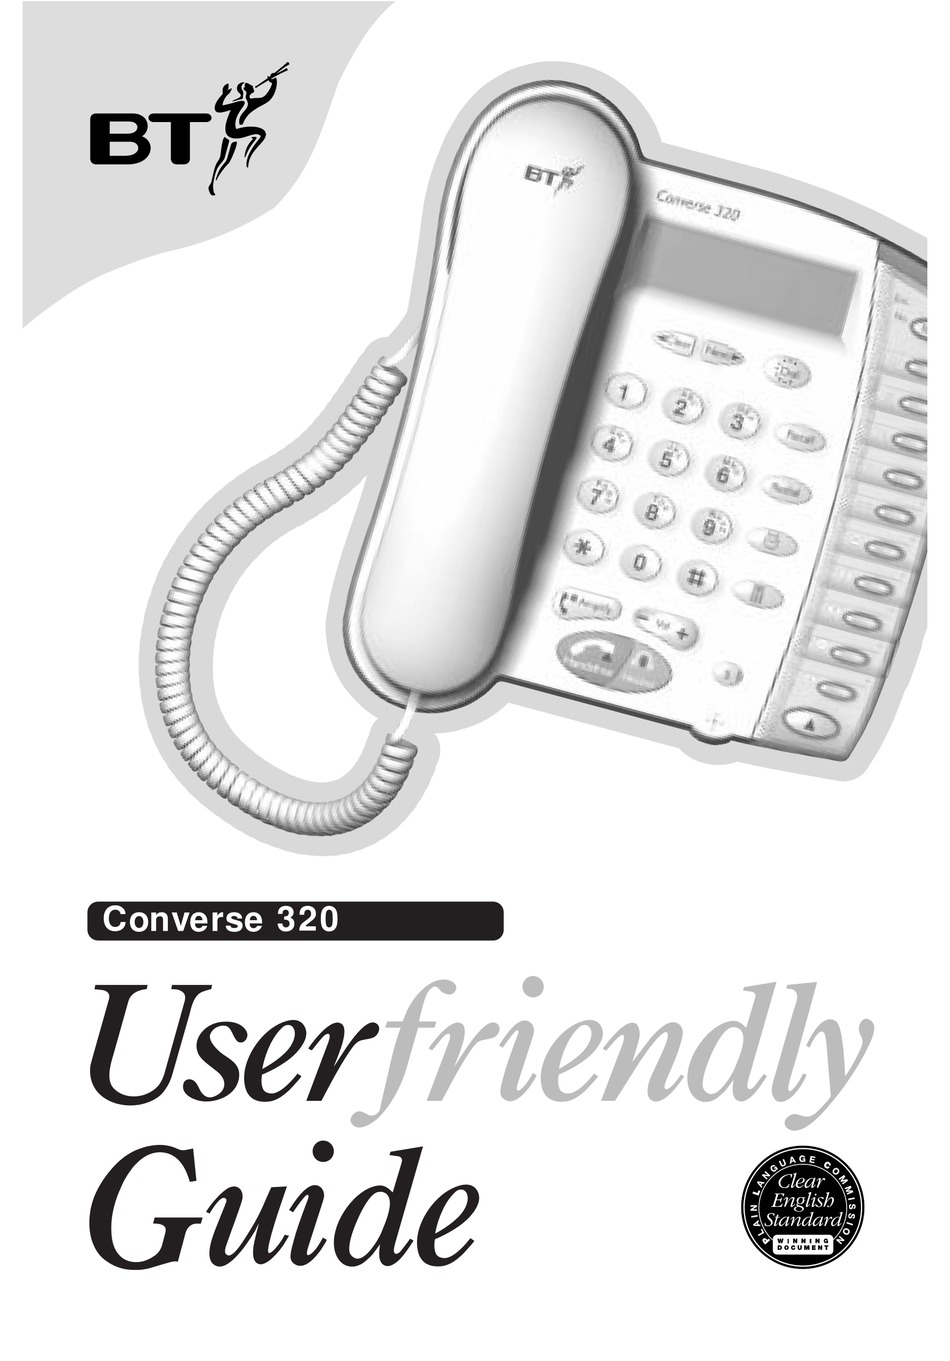 converse 325 phone manual